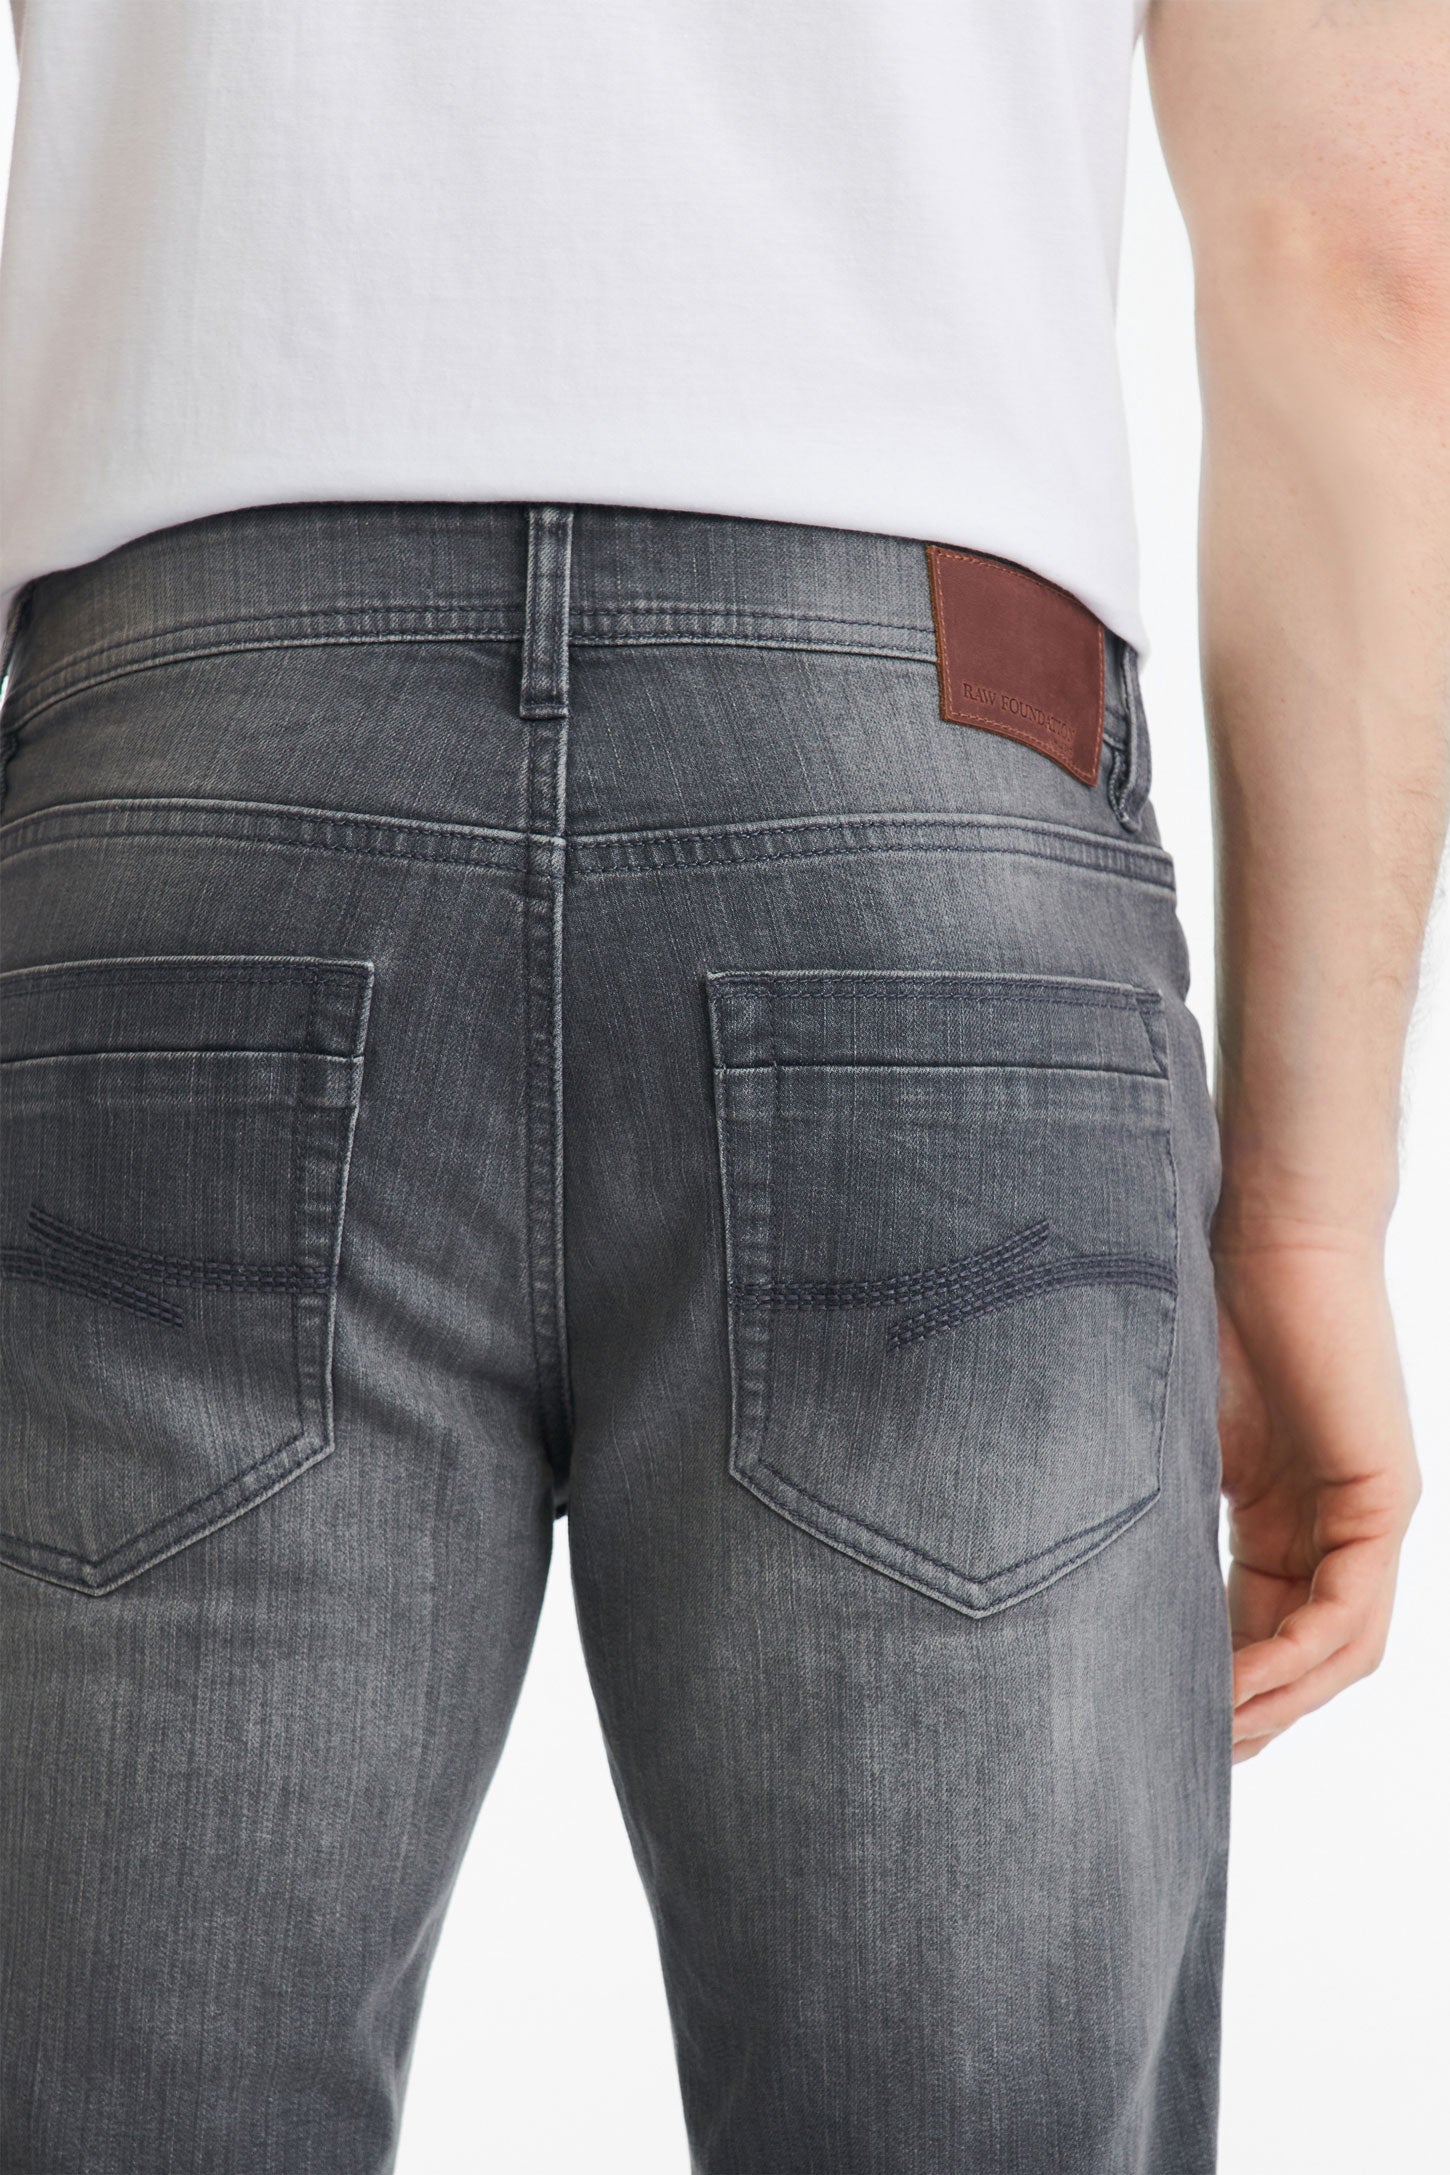 Jeans 5 poches coupe ajustée 32'' - Homme && GRIS